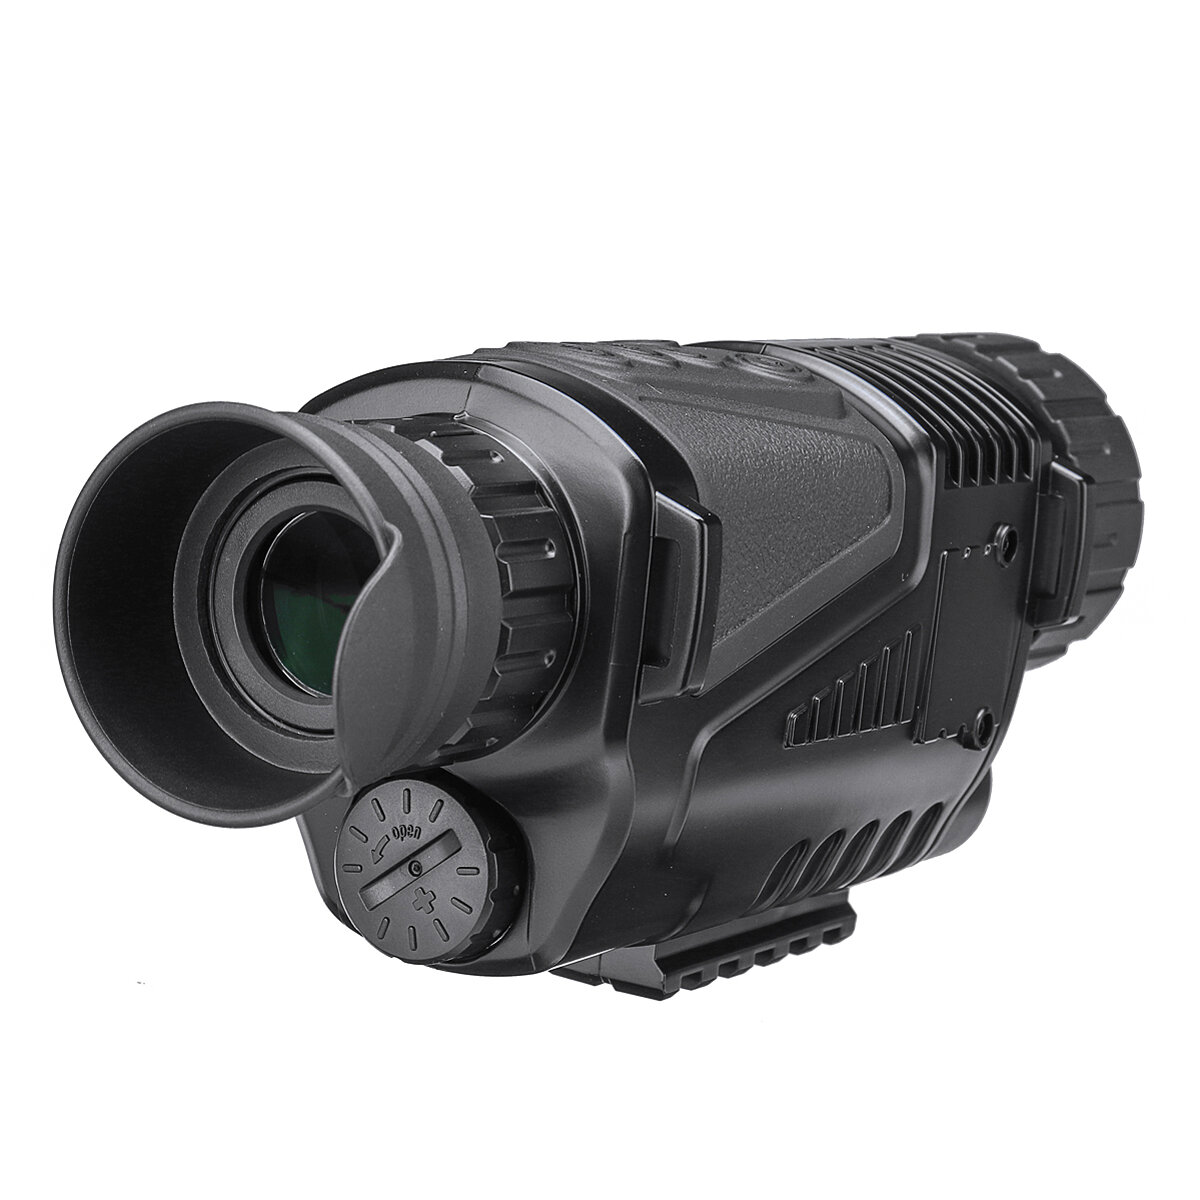 HD-infrarood nachtzichtapparaat Dual Use Monoculaire camera 5X digitale zoom telescoop voor buitenreizen en jagen